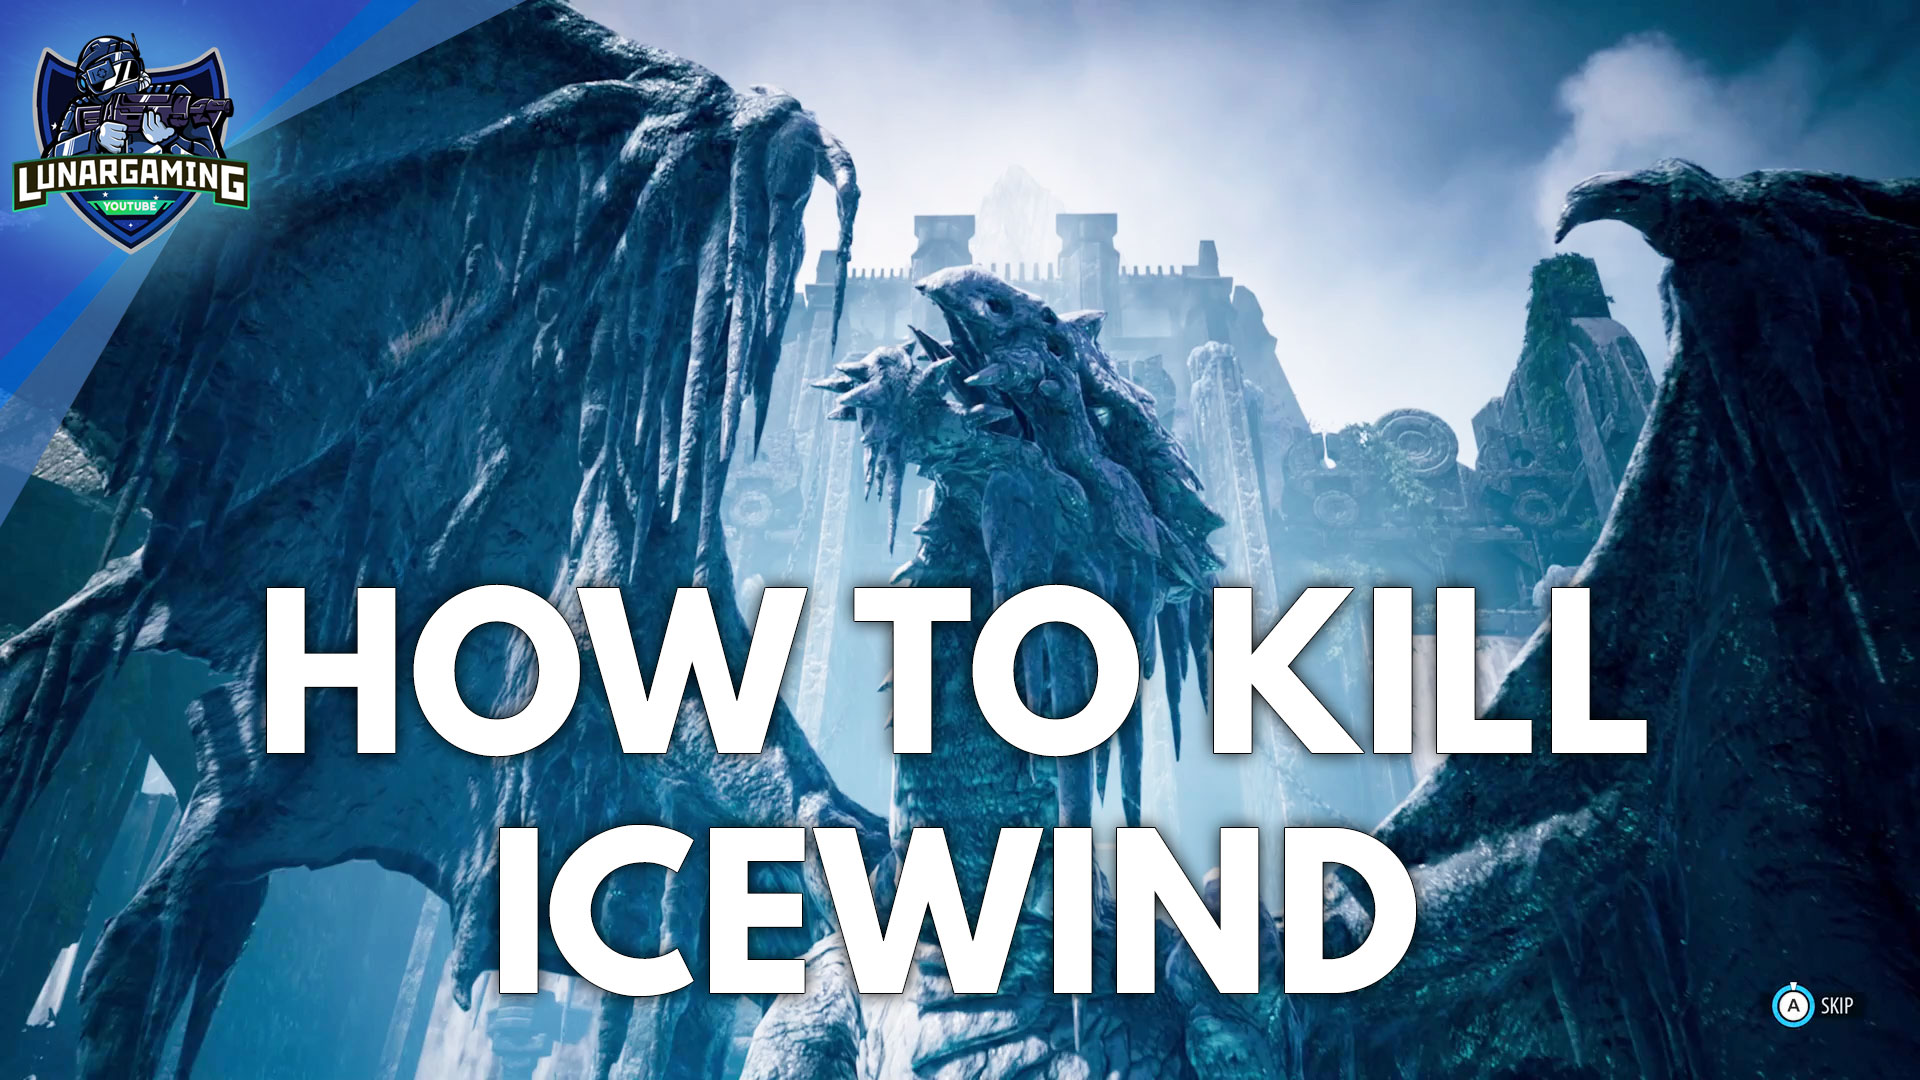 Icewind Final Boss Fight & Ending Dungeons & Dragons Dark Alliance